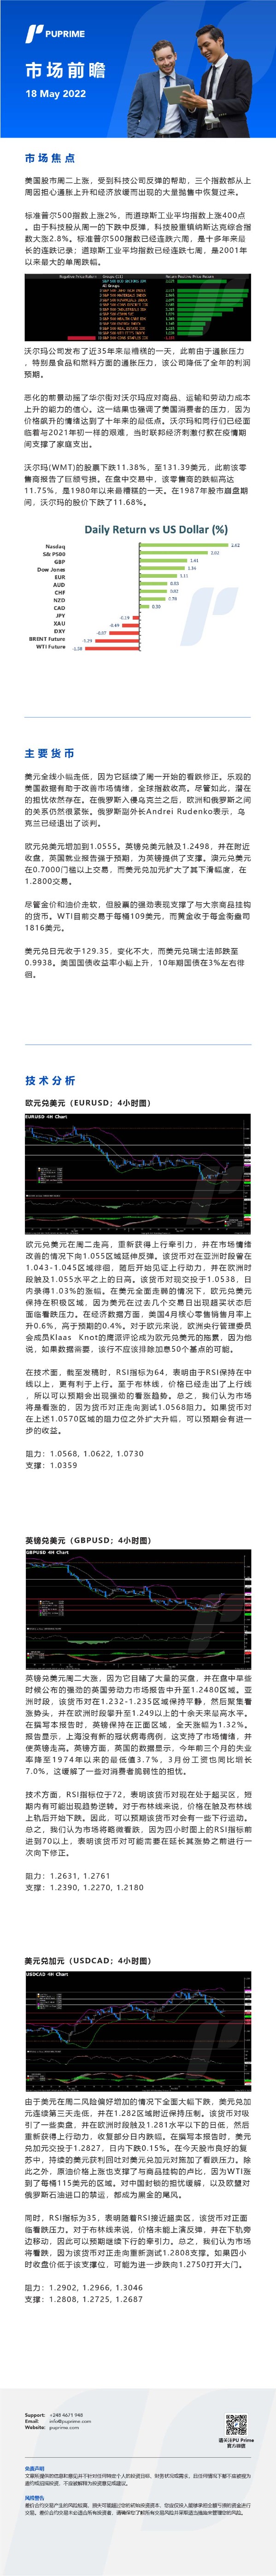 18052022 Daily Market Analysis__CHN.jpg